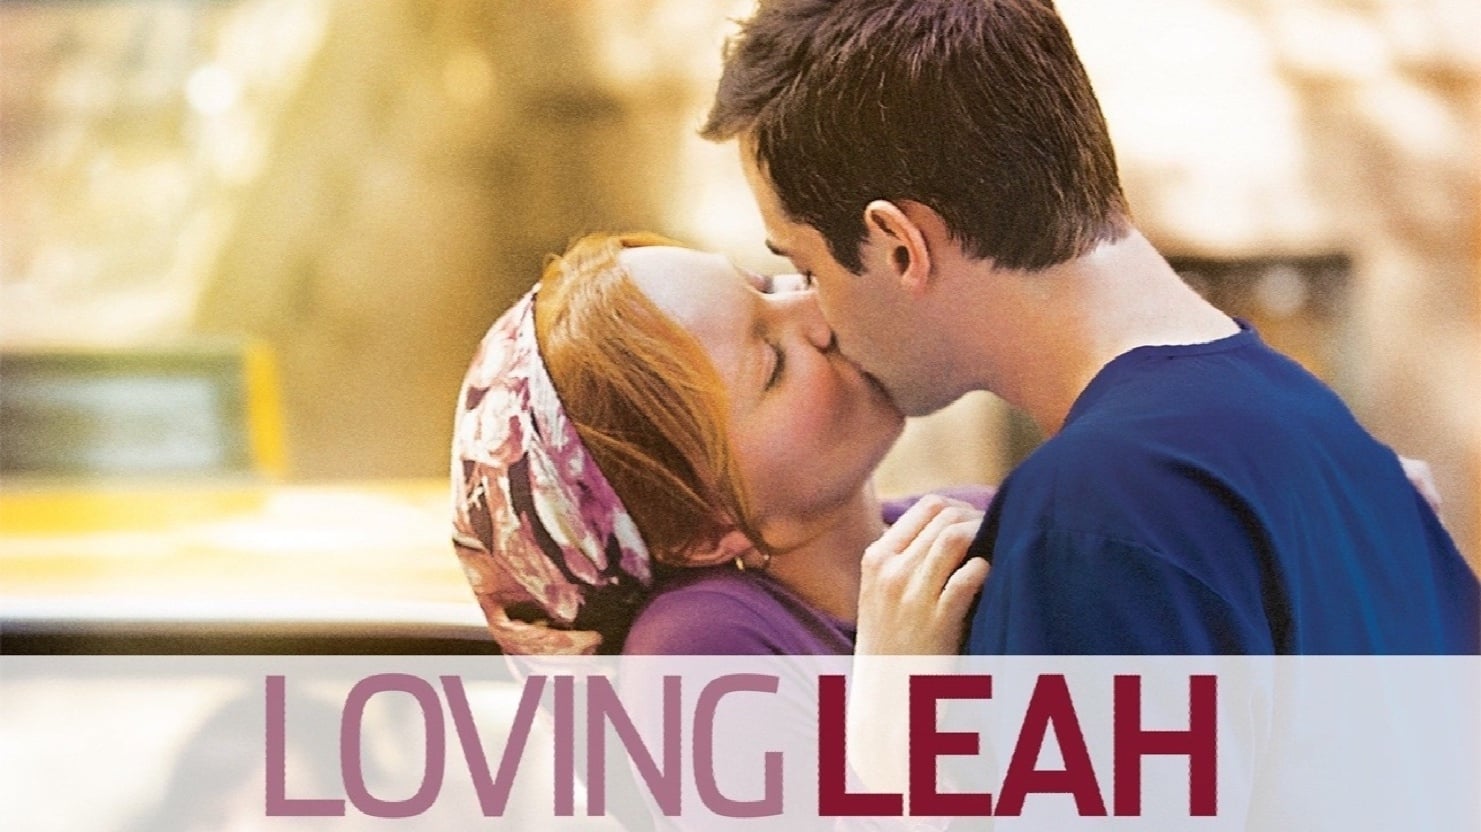 Loving Leah (2009)